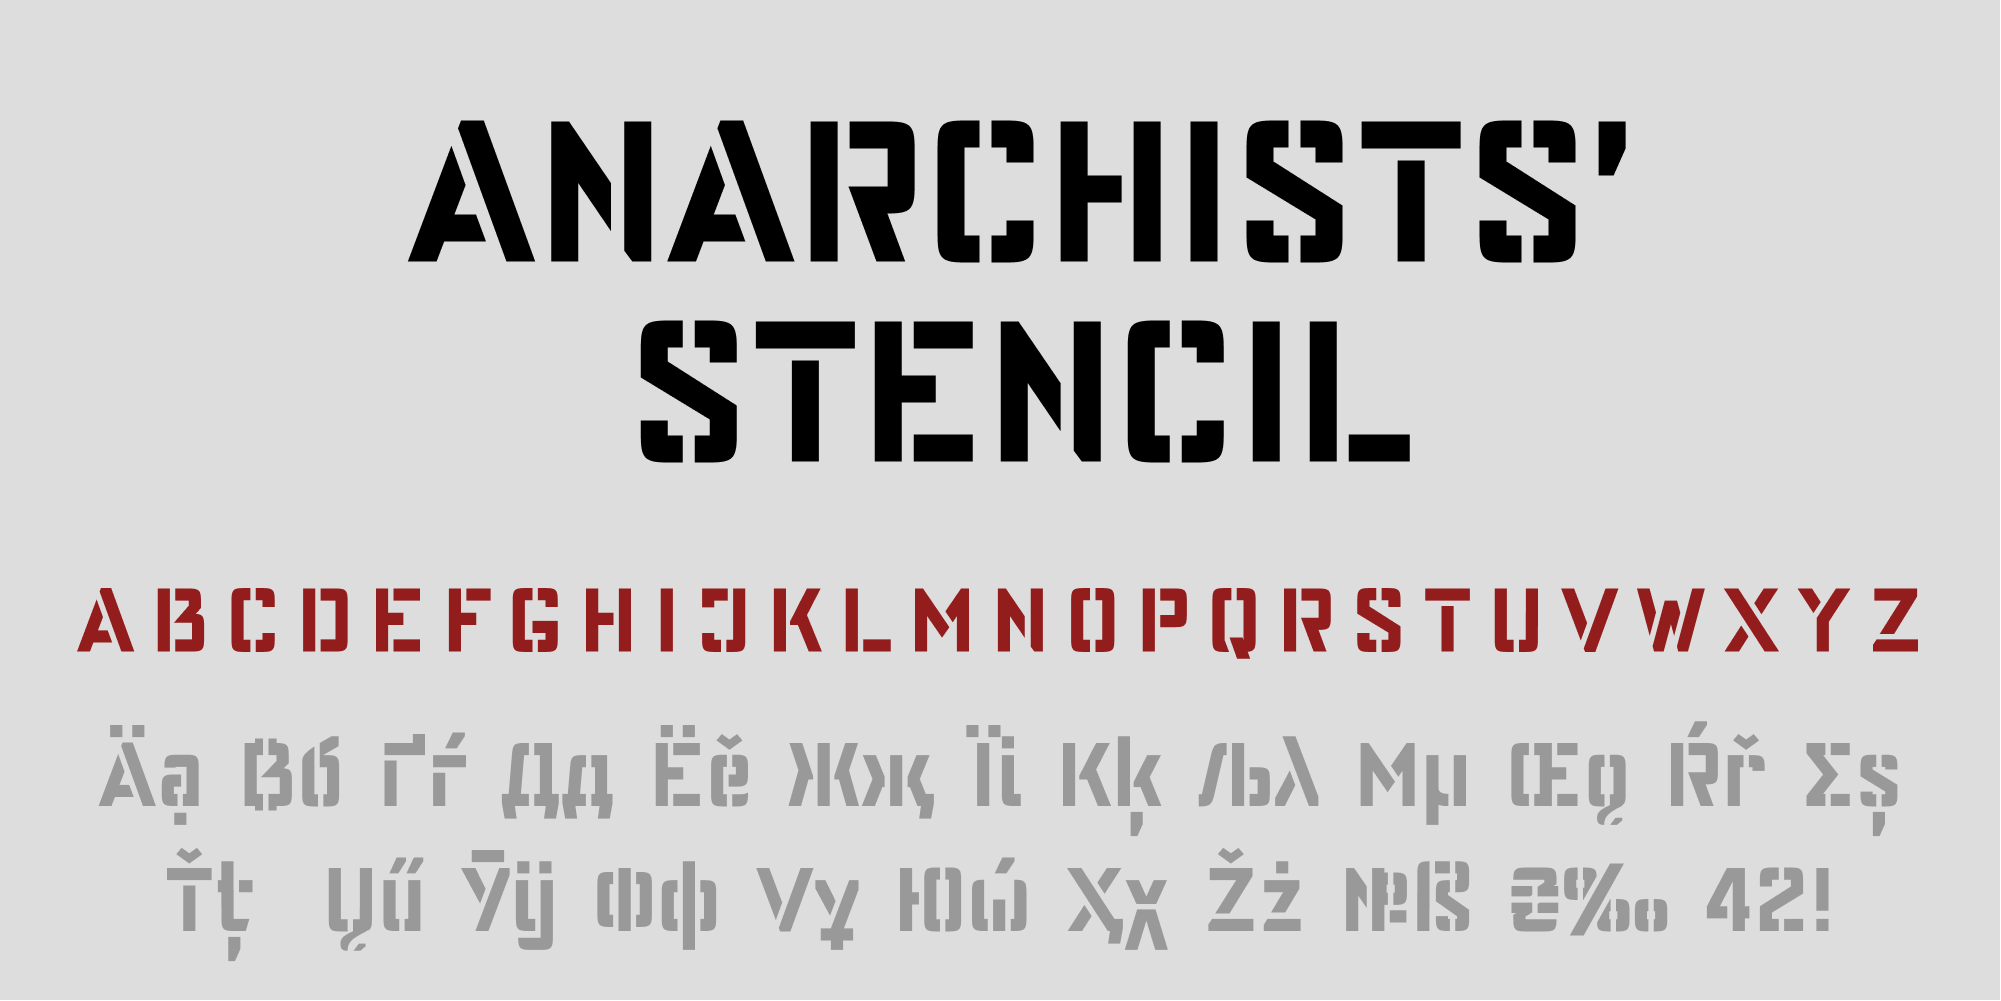 Anarchists' Stencil by Dimka Fonts